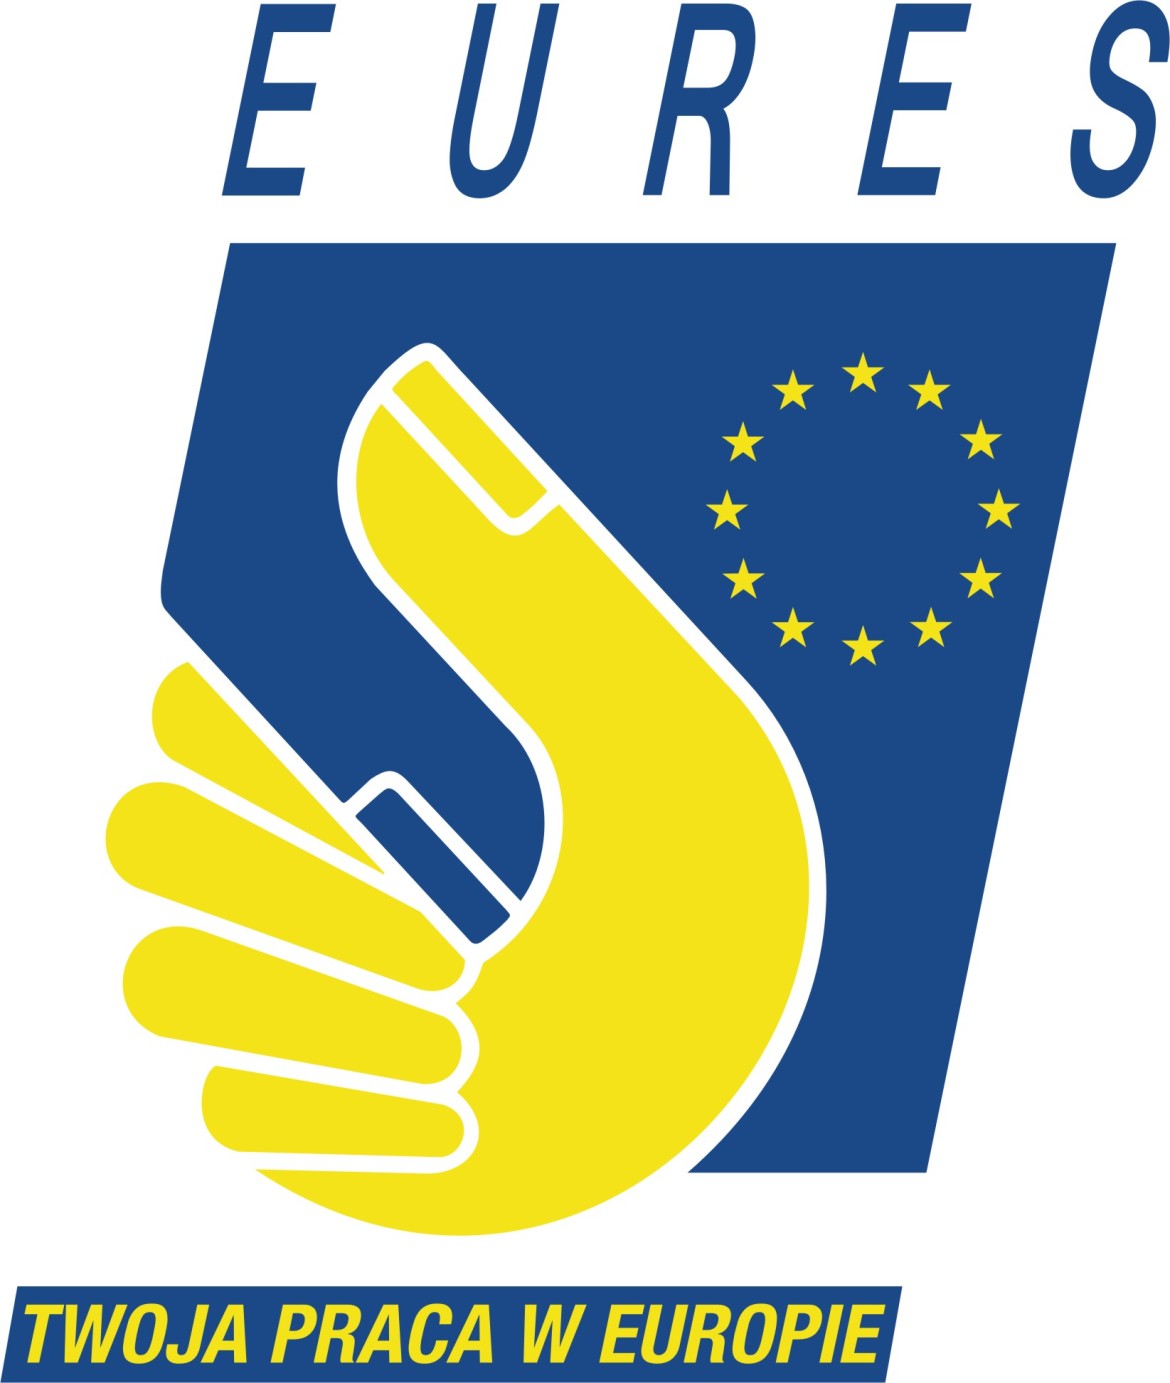 EURES - Twoja praca w Europie